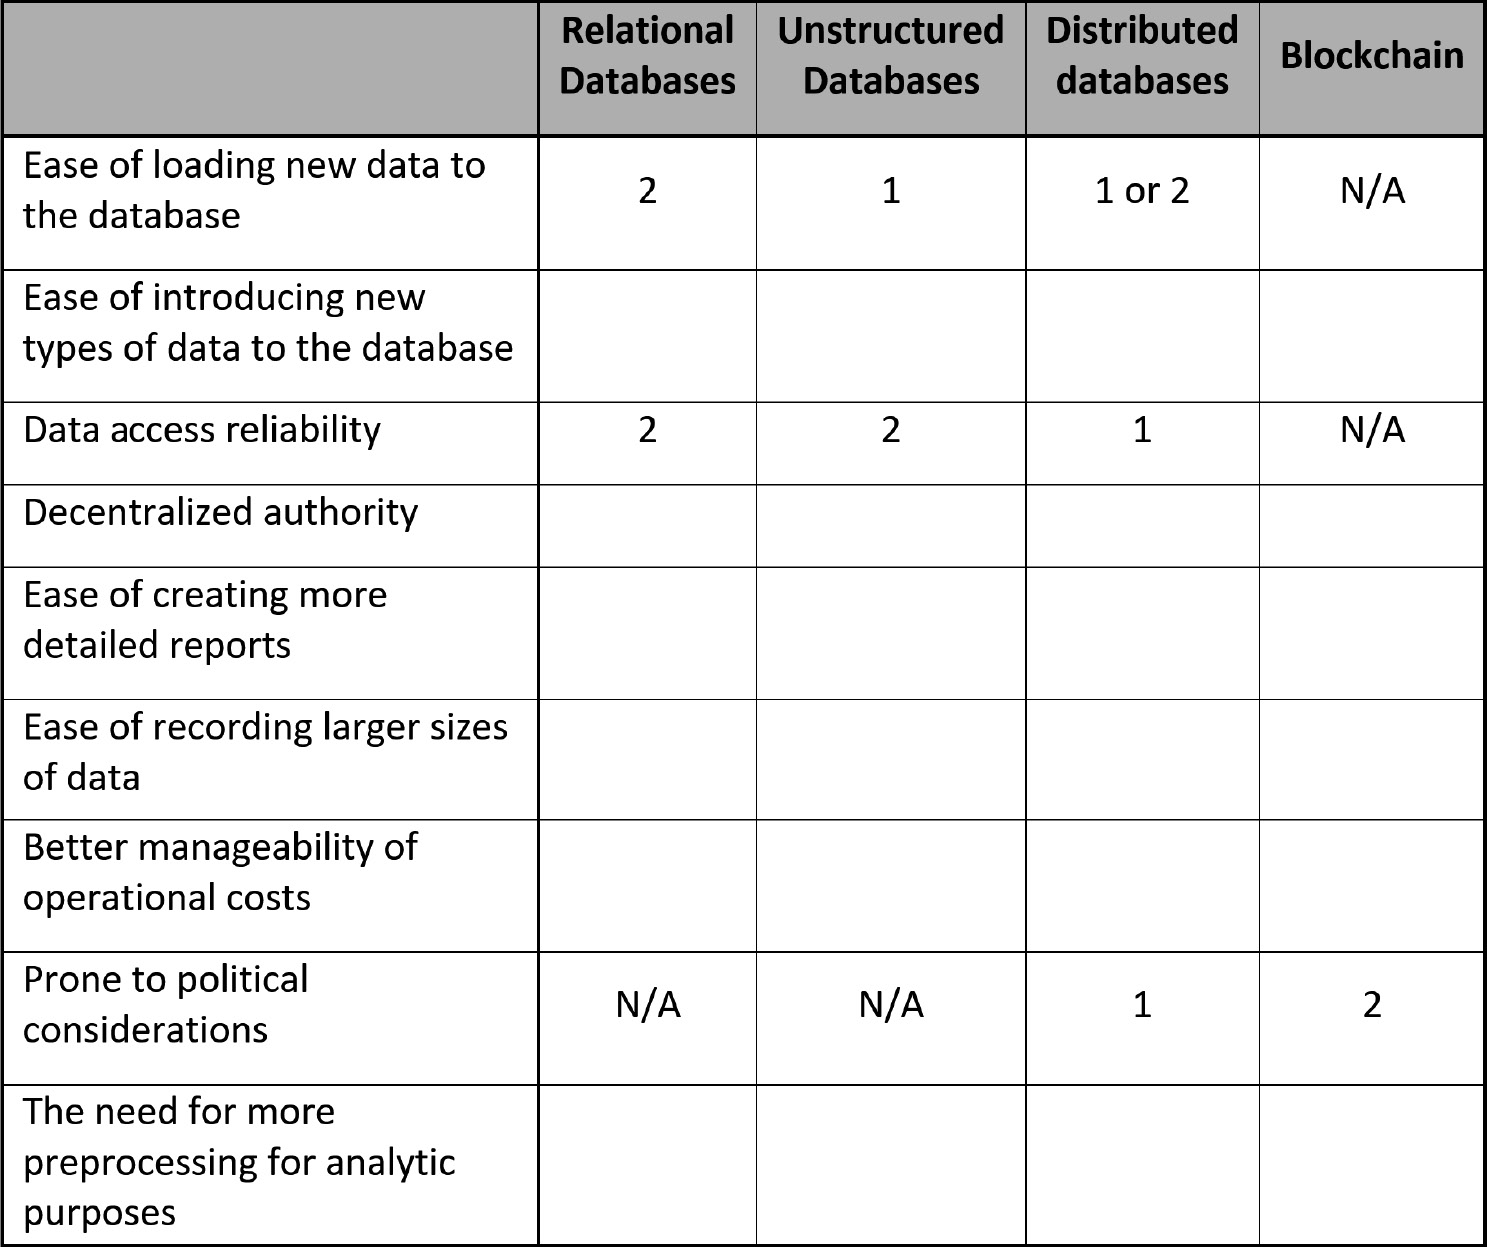 Figure 4.8 – Database type ranking
